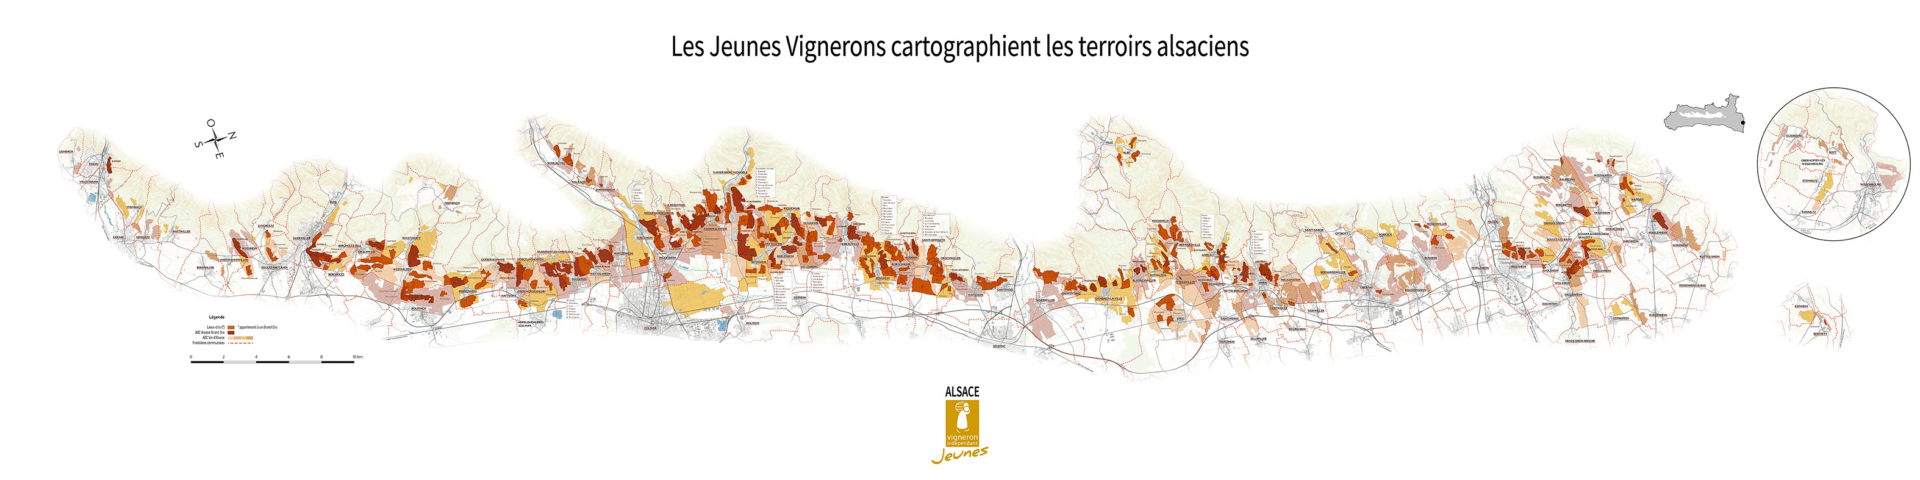 atlas cartographique des terroirs viticoles d'alsace